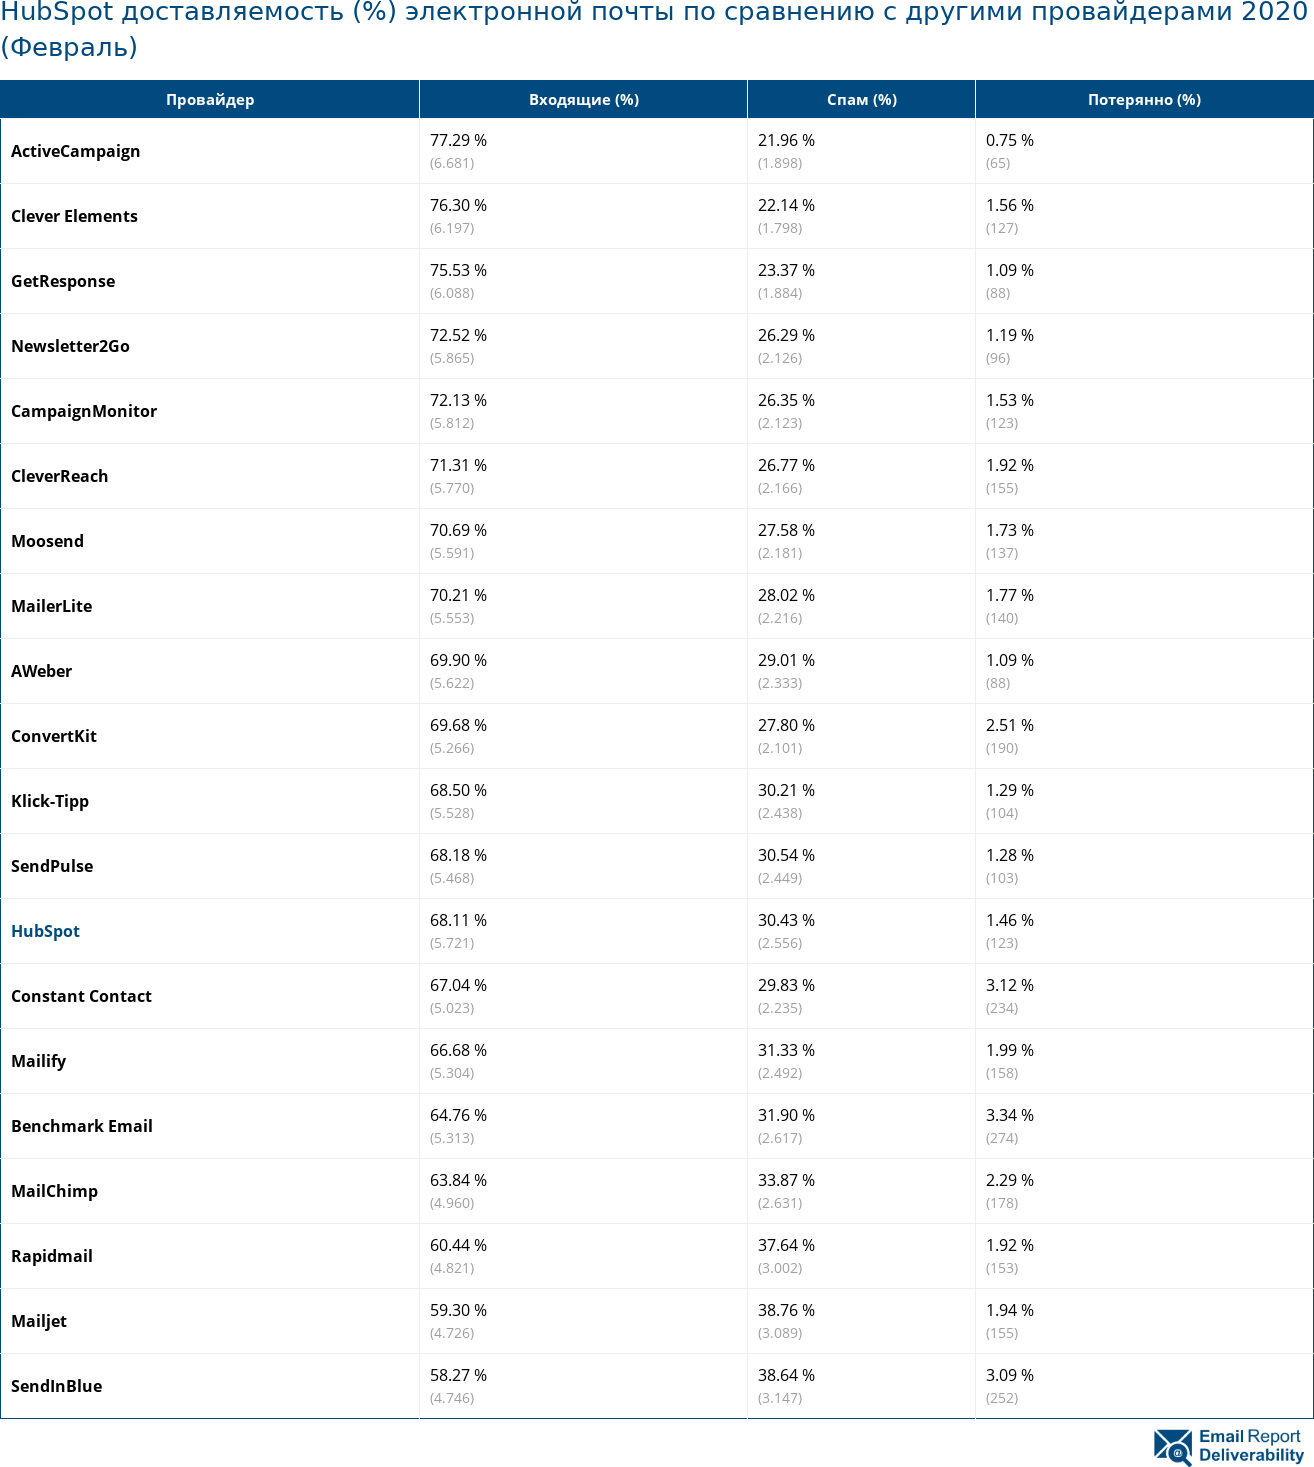 HubSpot доставляемость (%) электронной почты по сравнению с другими провайдерами 2020 (Февраль)